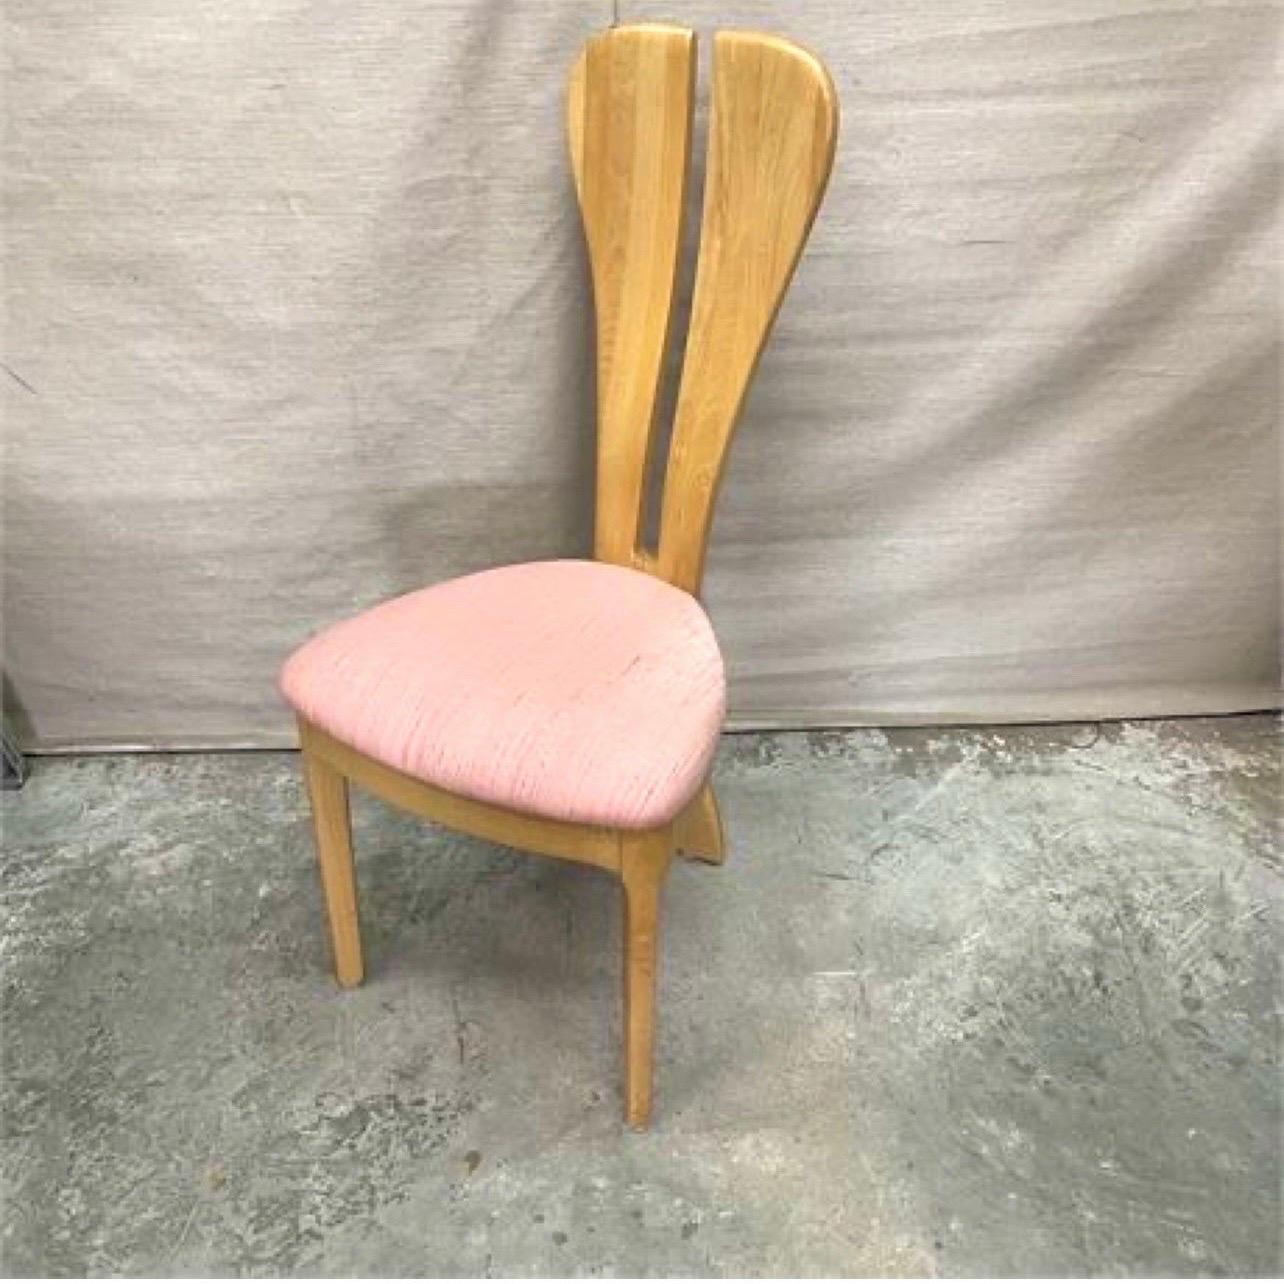 Dieser Stuhl ist so sexy, dass ich ihn in jedem Raum des Hauses unterbringen könnte. Und der Stoff des Sitzkissens lässt sich leicht an Ihre Einrichtung anpassen. (Denn vielleicht ist Rosa nicht deine Farbe?). Dieser Kaninchenohr-Stuhl mit geteilter